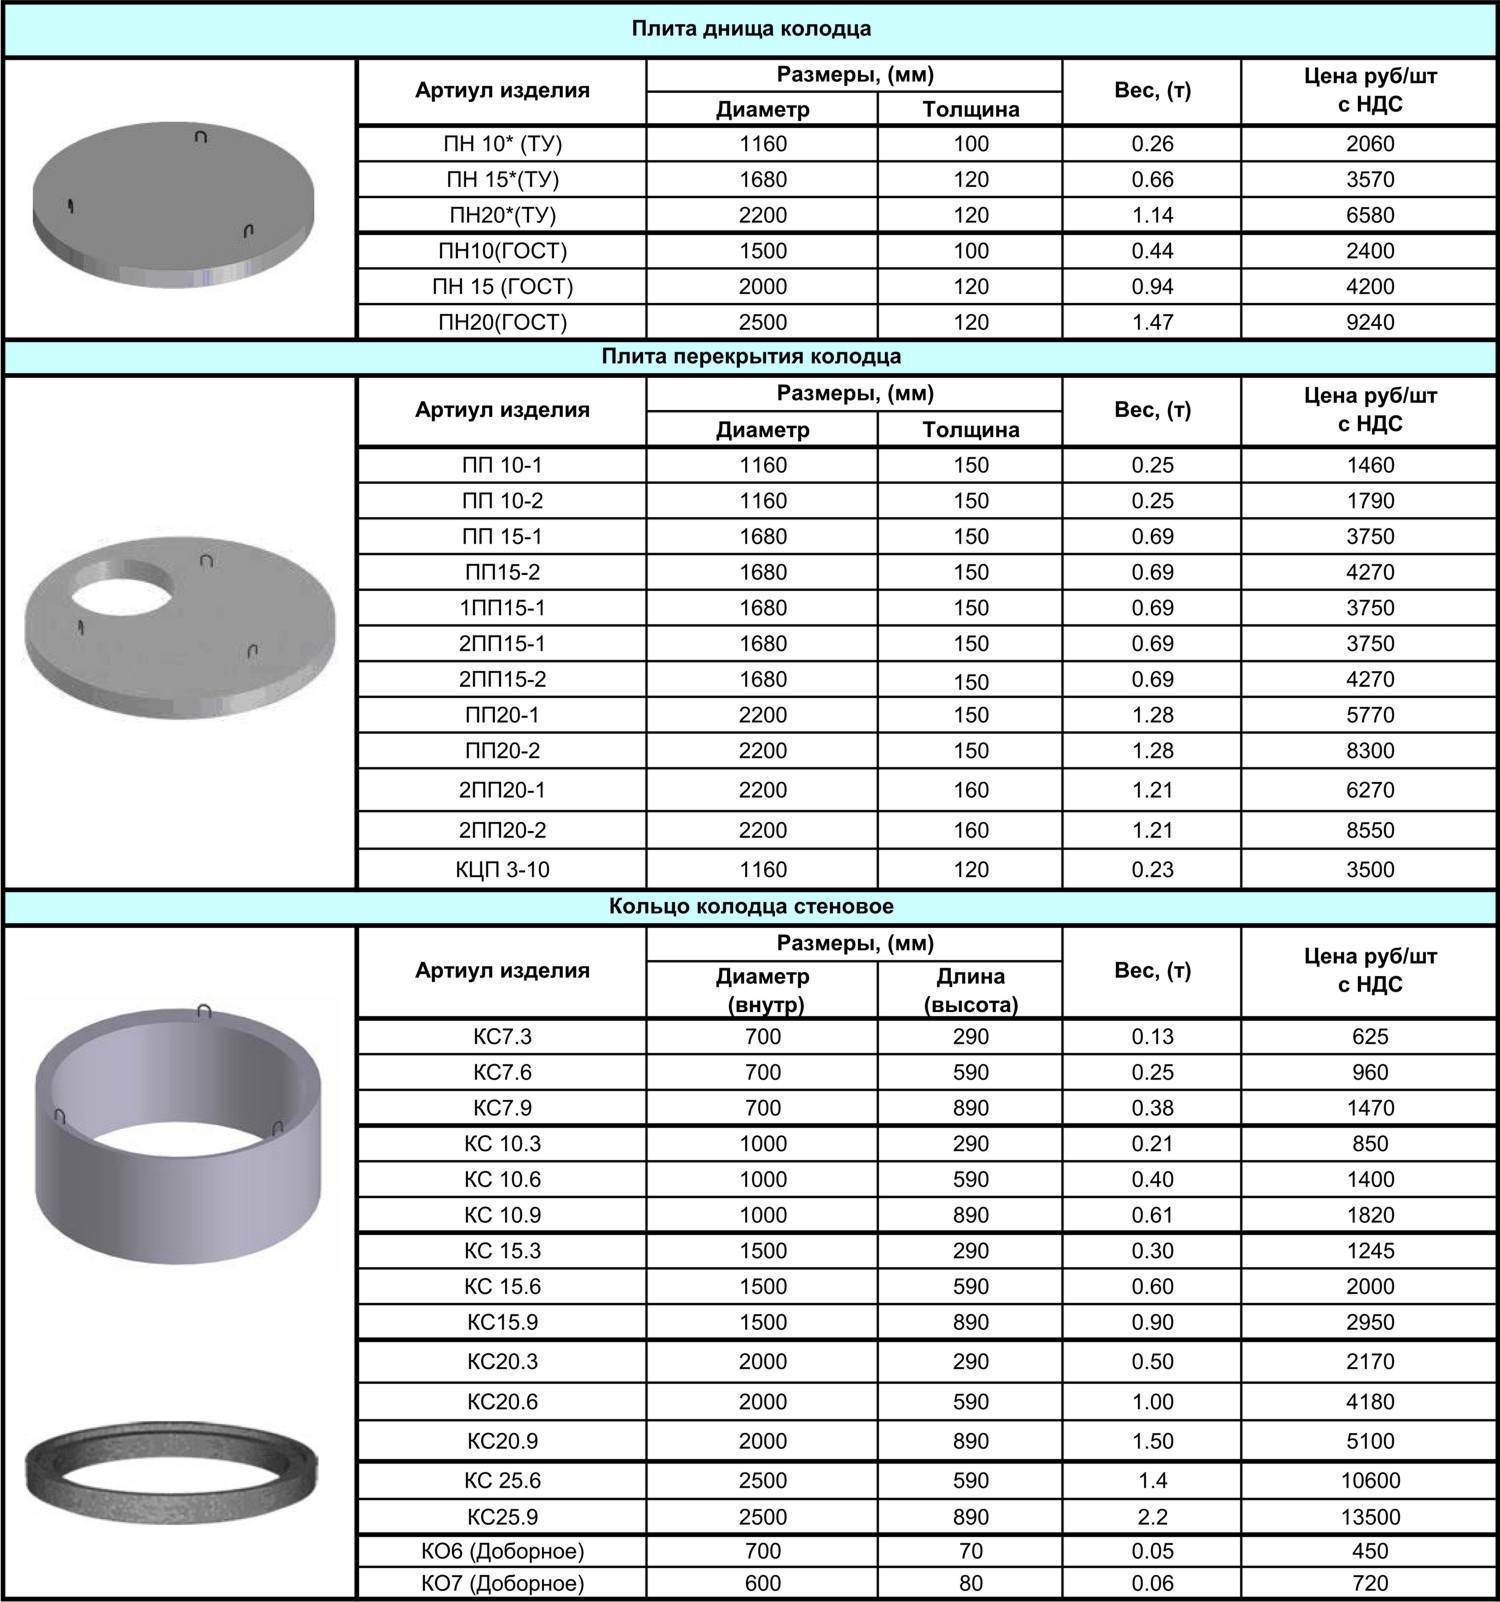 Канализационные кольца: классификация и способ установки железобетонных колец для канализации
канализационные кольца: классификация и способ установки железобетонных колец для канализации